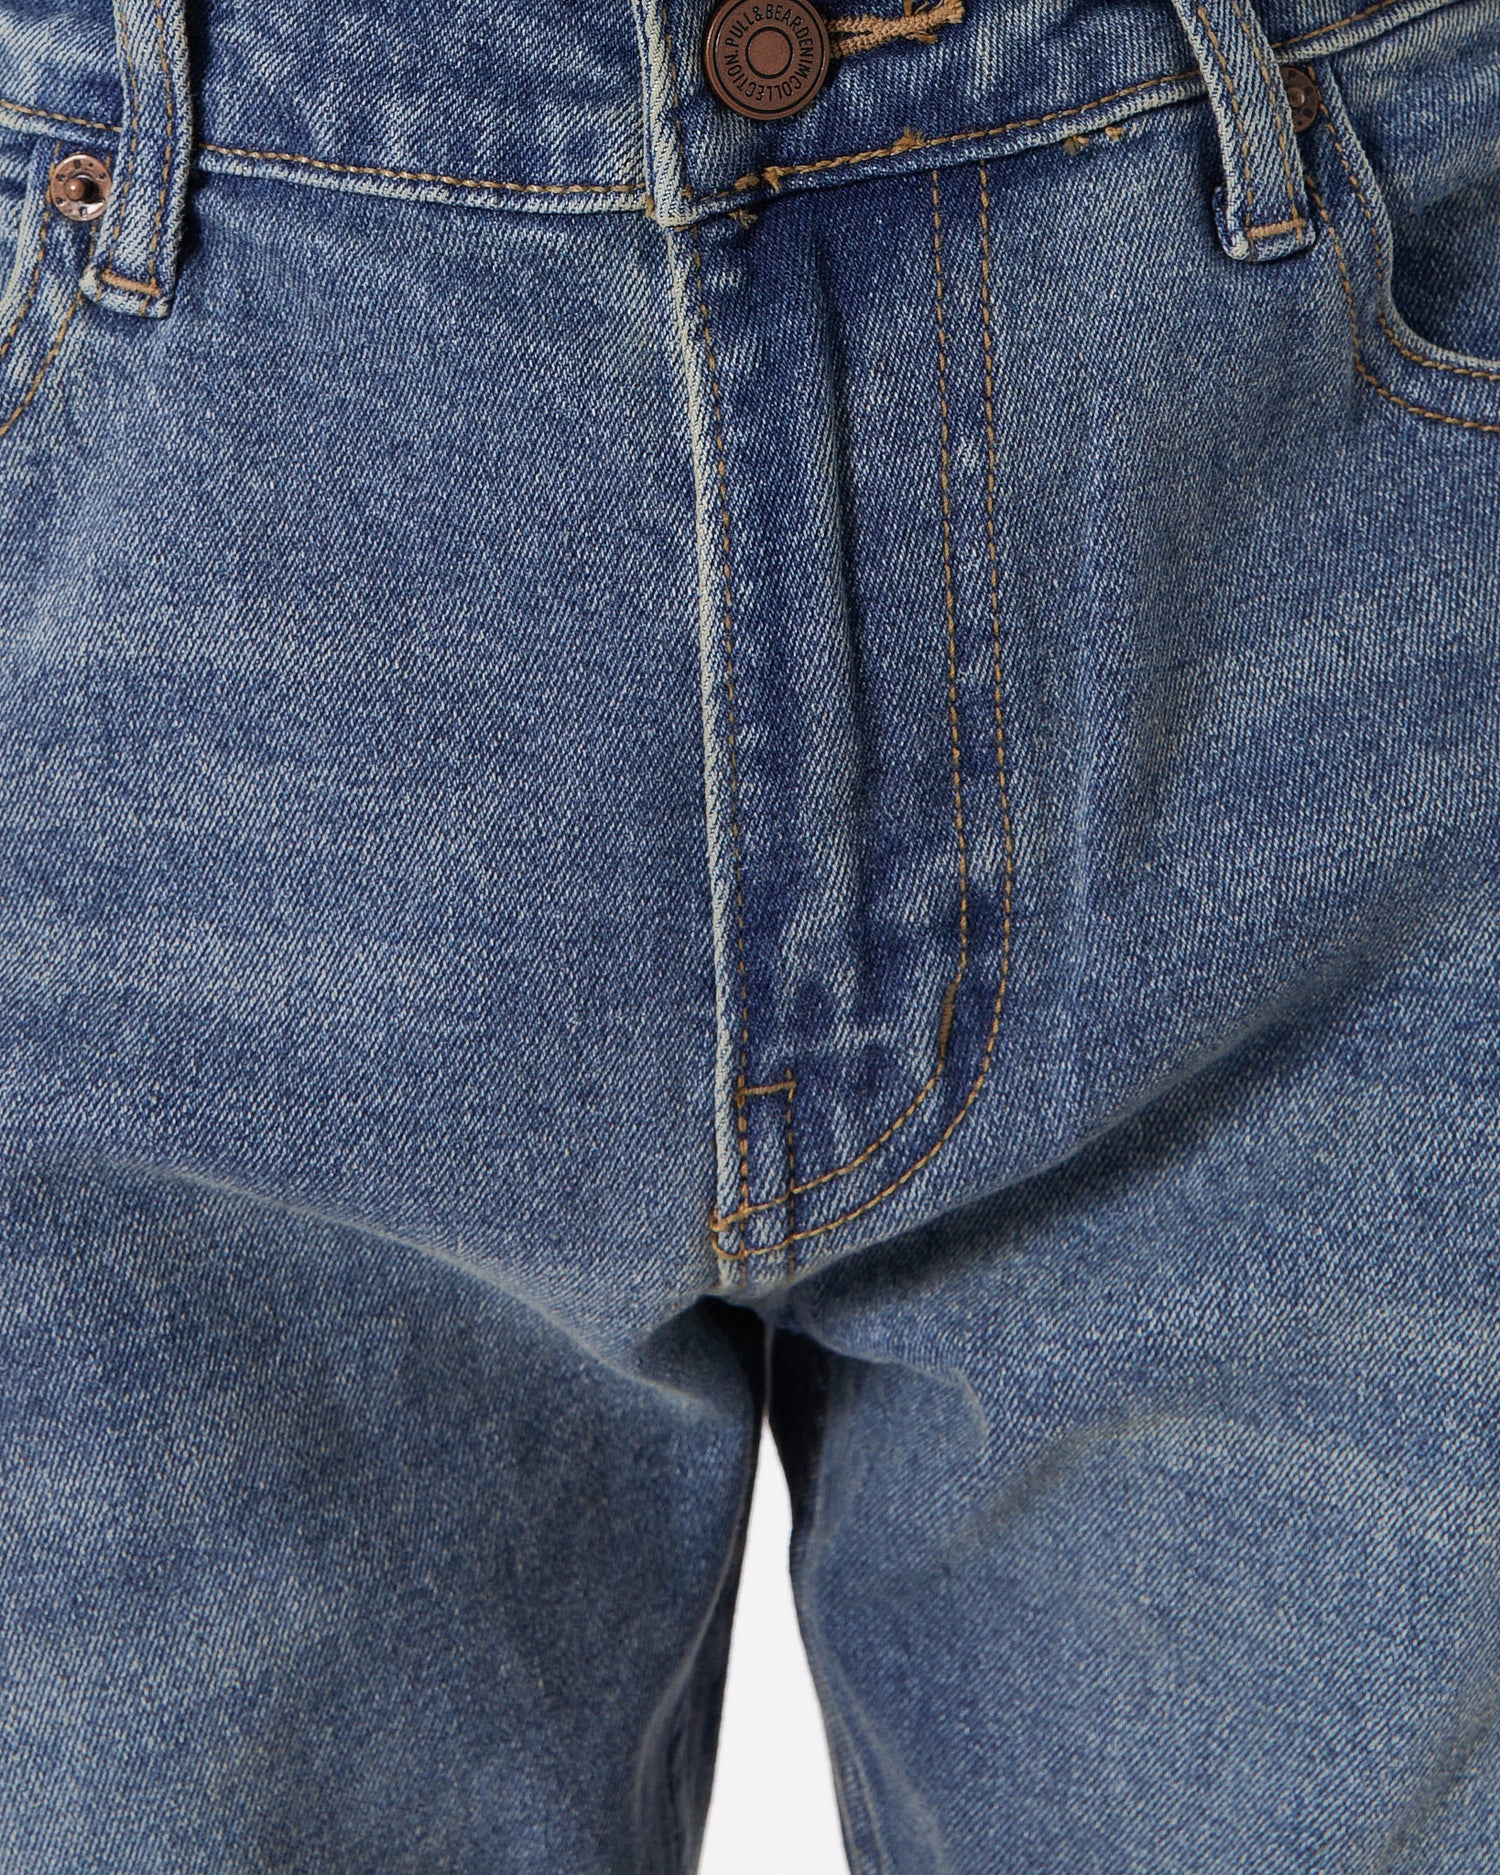 PB Men Blue Slim Fit Jeans 24.90